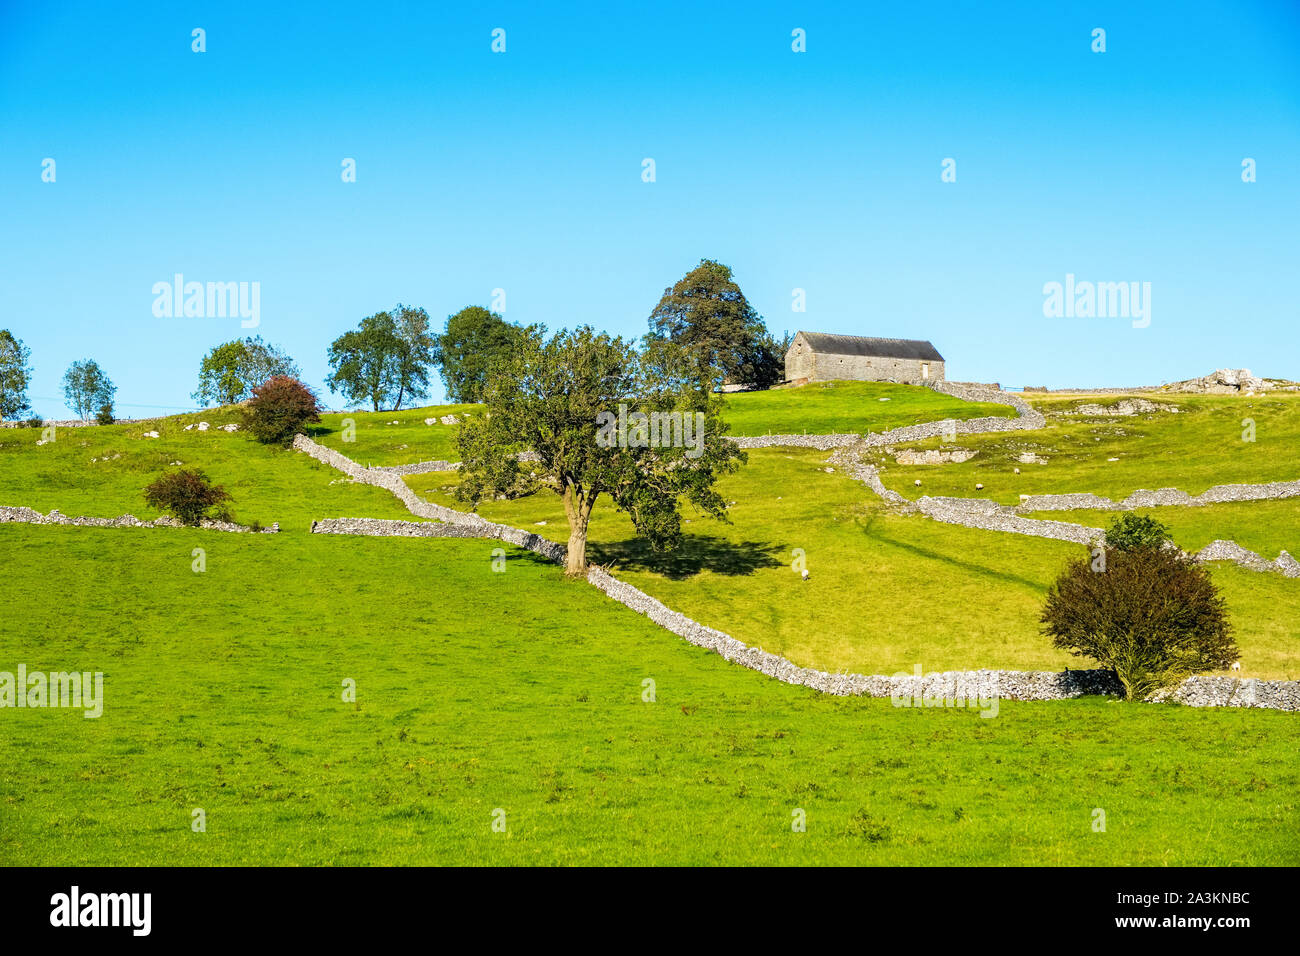 Bianco tipico paesaggio di picco dei campi e dei muri in pietra a secco, il Parco Nazionale di Peak District, Derbyshire, Regno Unito Foto Stock